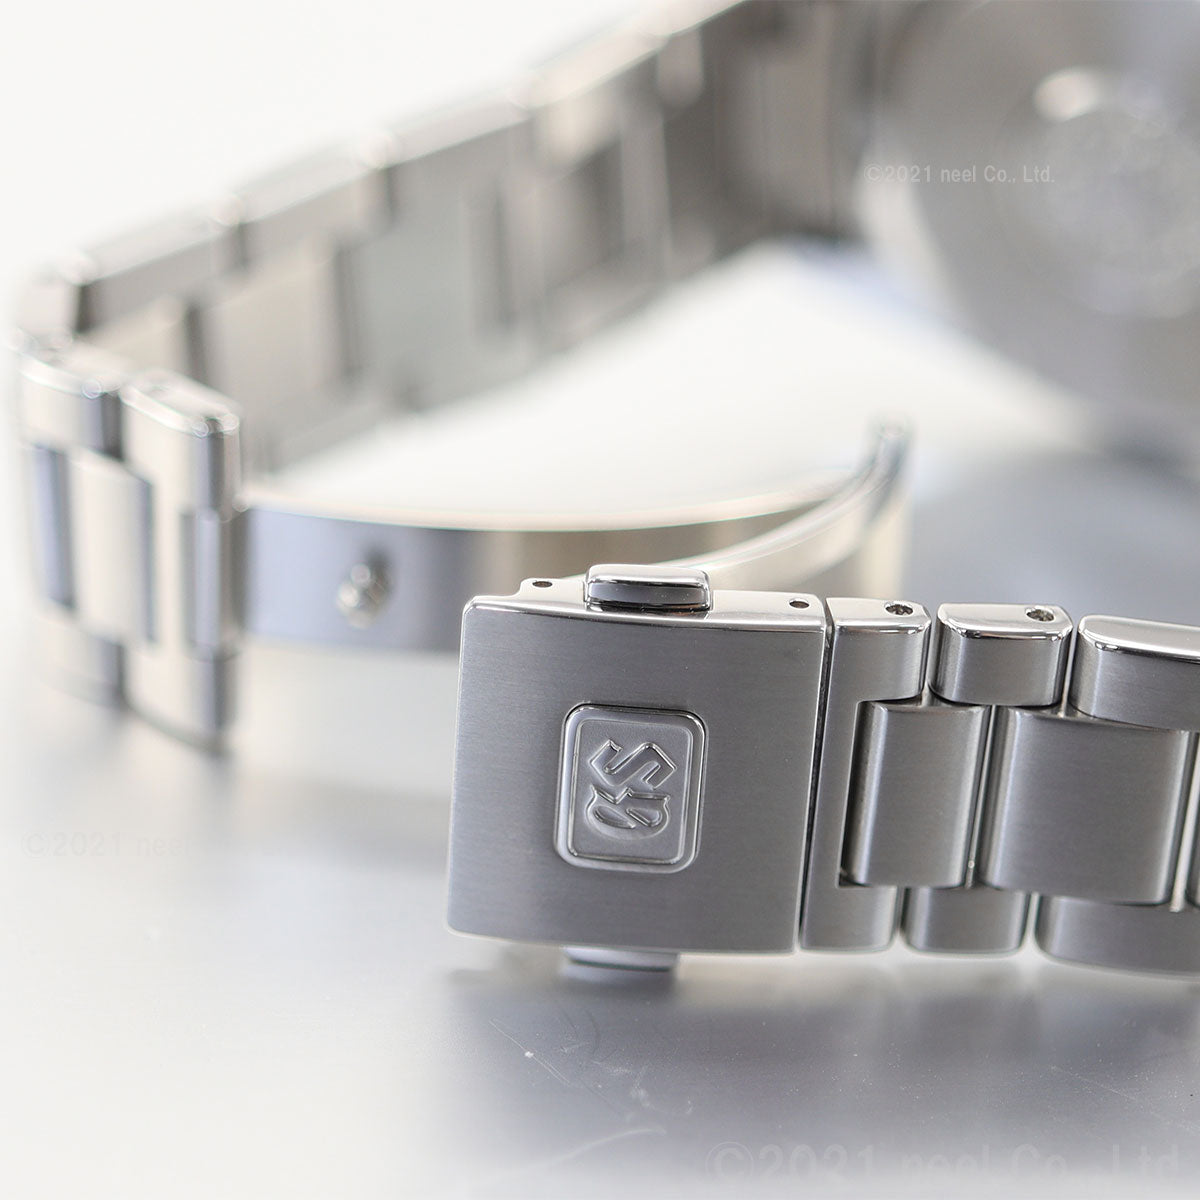 【36回分割手数料無料！】グランドセイコー 9F クオーツ GMT SBGN021 メンズ 腕時計 強化耐磁 ブルー GRAND SEIKO 9F86